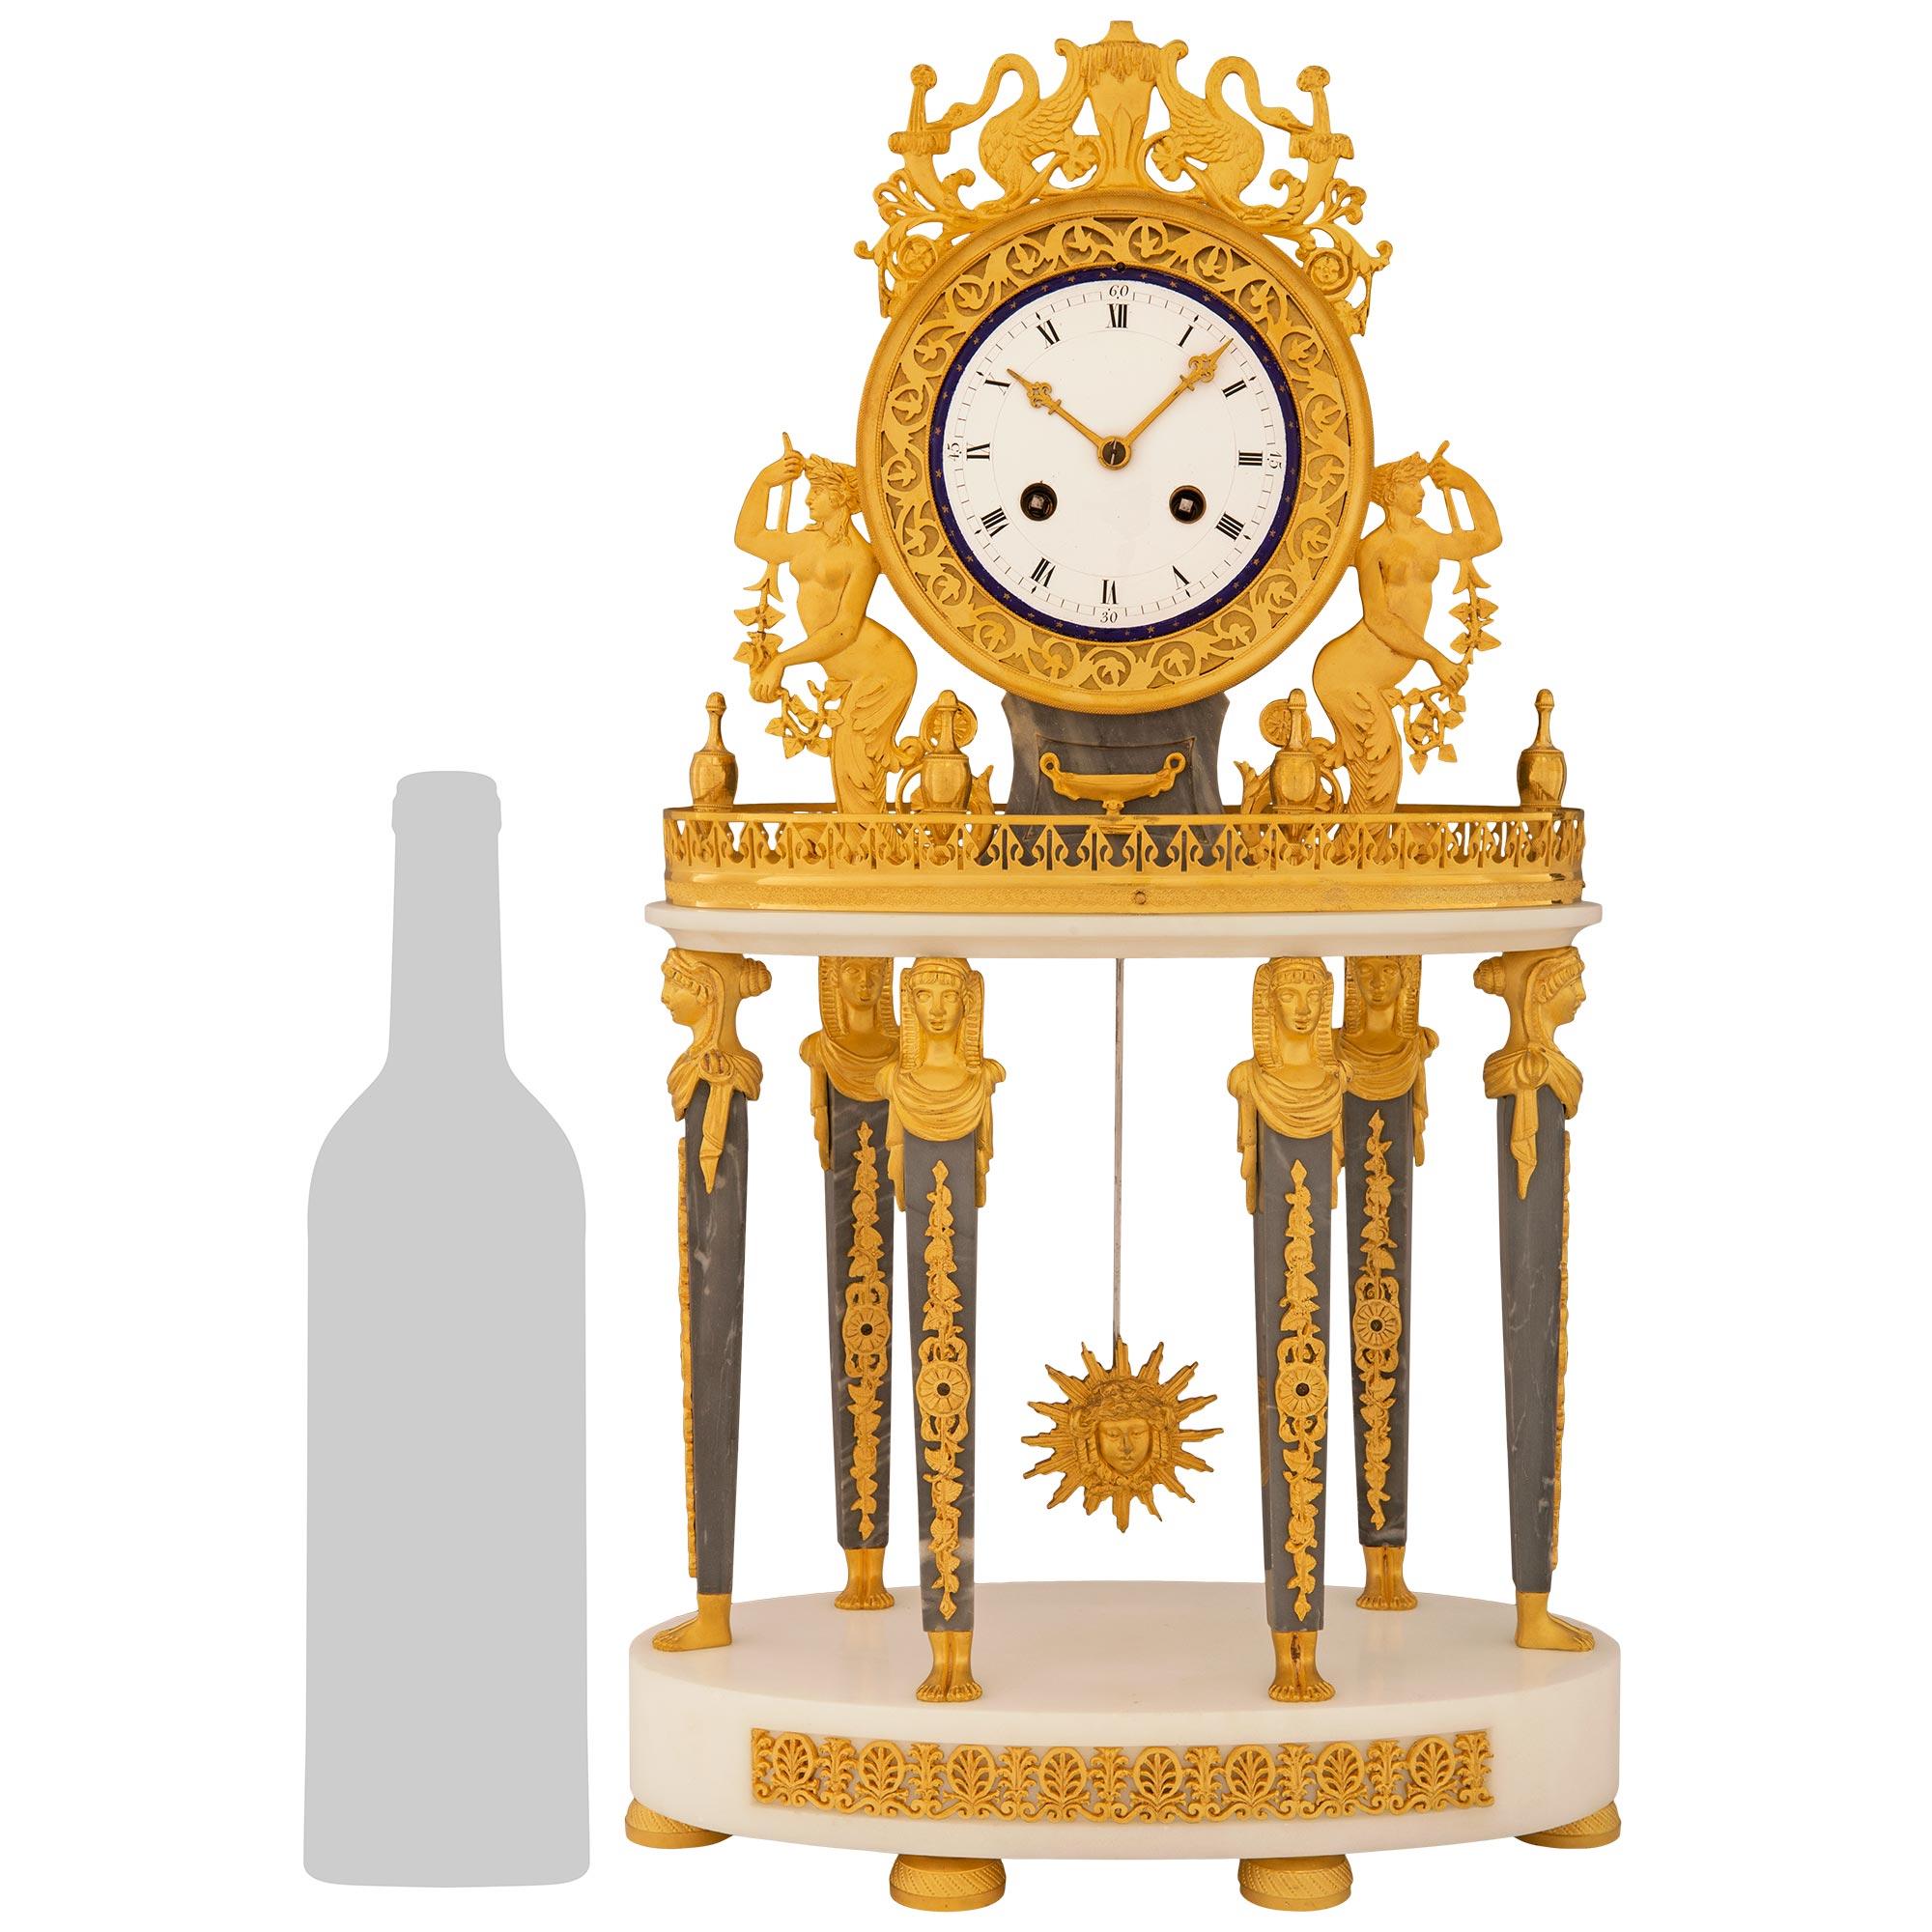 Eine atemberaubende und qualitativ hochwertige französische Empire-Uhr aus dem 19. Jahrhundert in St. Anne Gris, weißem Carrara-Marmor und Ormolu. Diese schöne Uhr steht auf einem runden Sockel aus weißem Carrara-Marmor mit einem durchbrochenen,